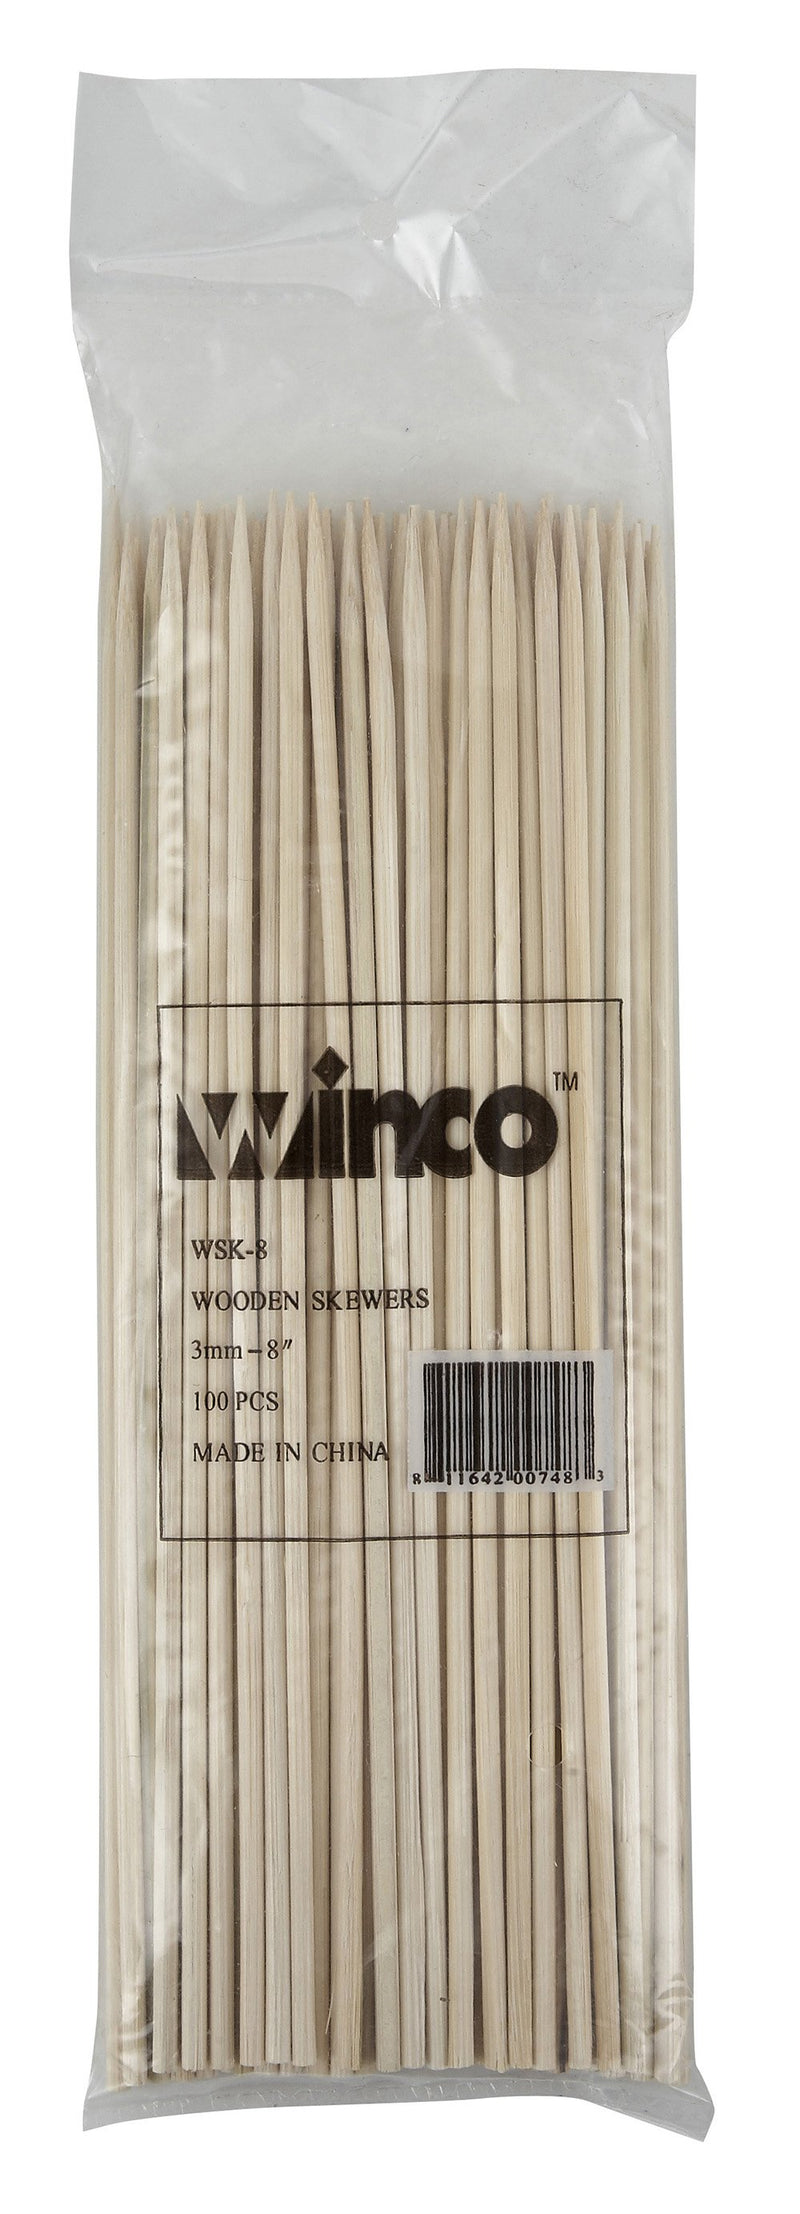 Bamboo Skewers 100 pcs/bag